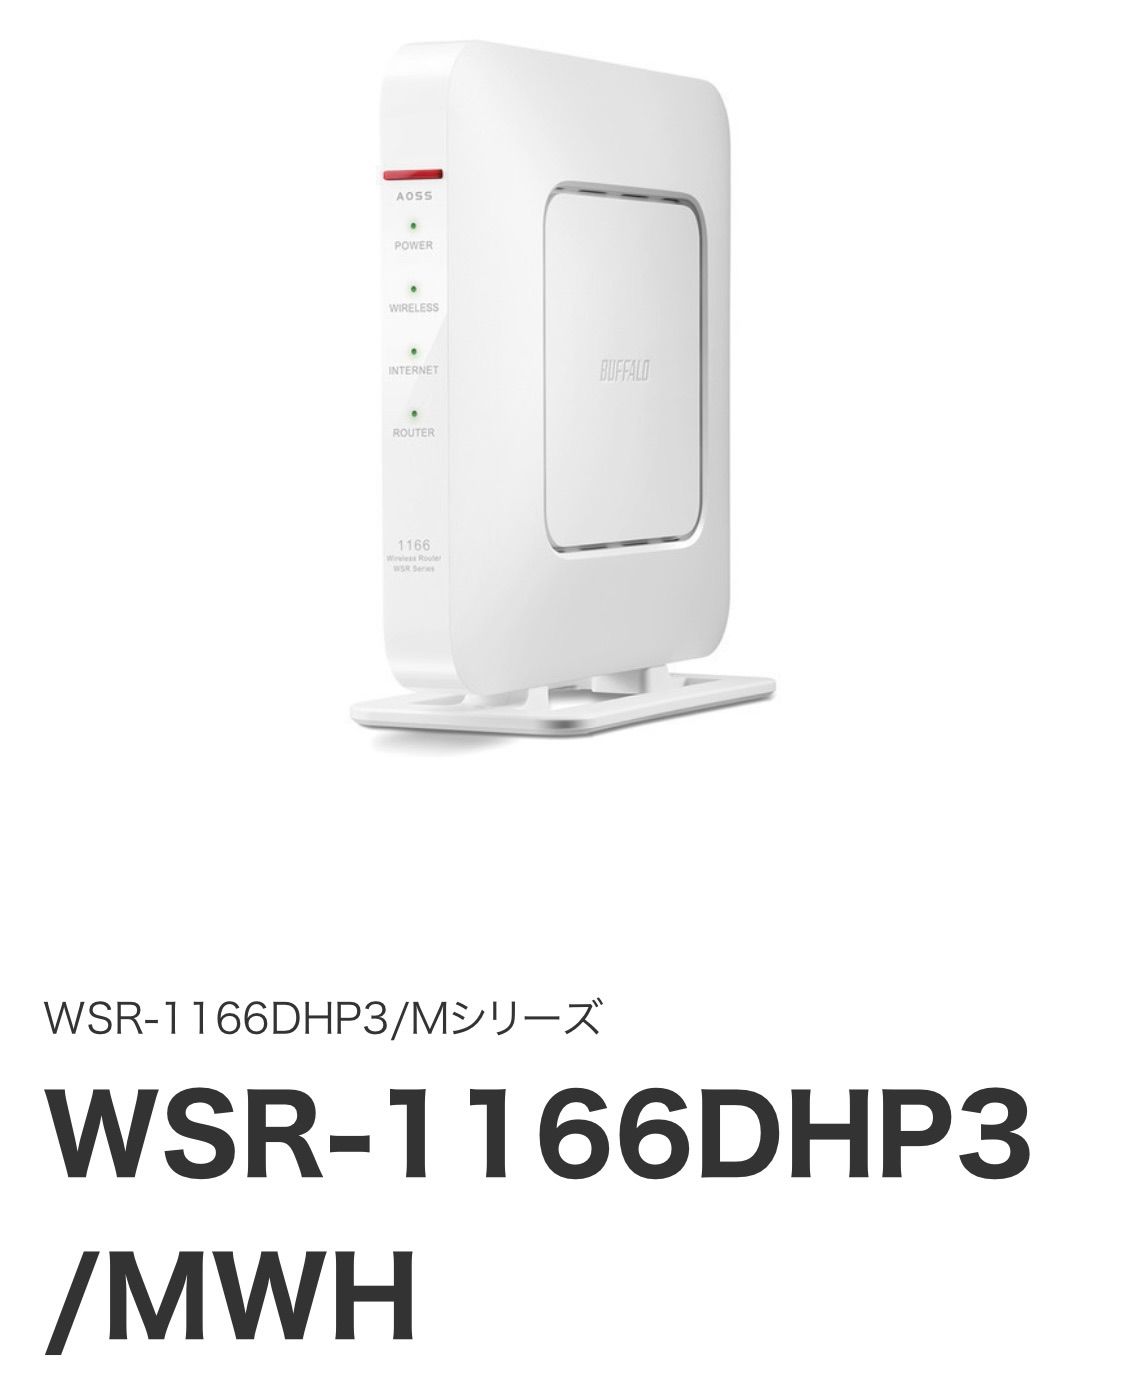 WSR-1166DHP3